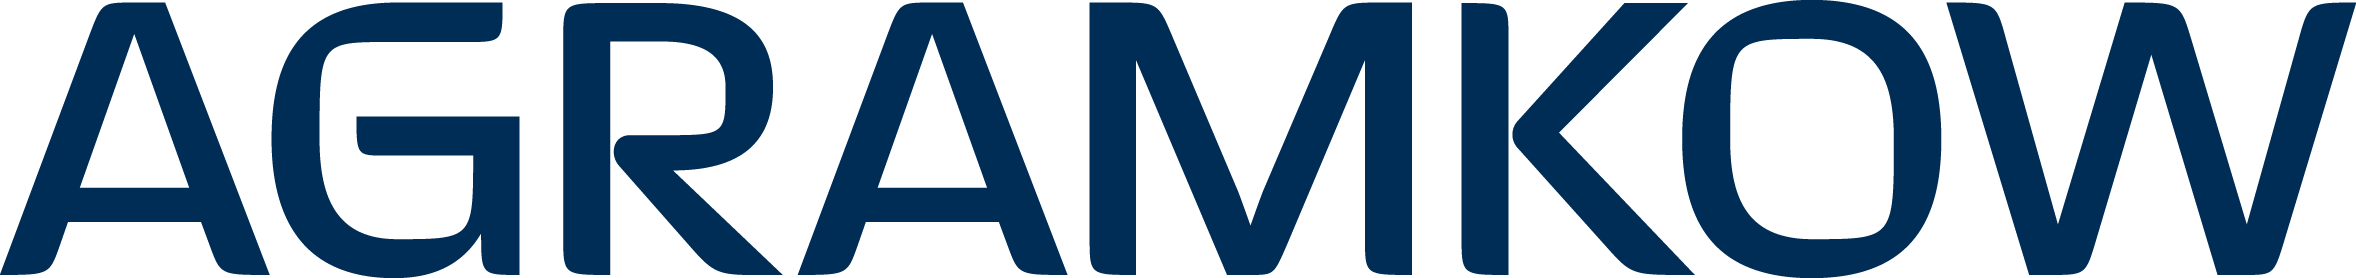 Agramkow Logo Tranparent